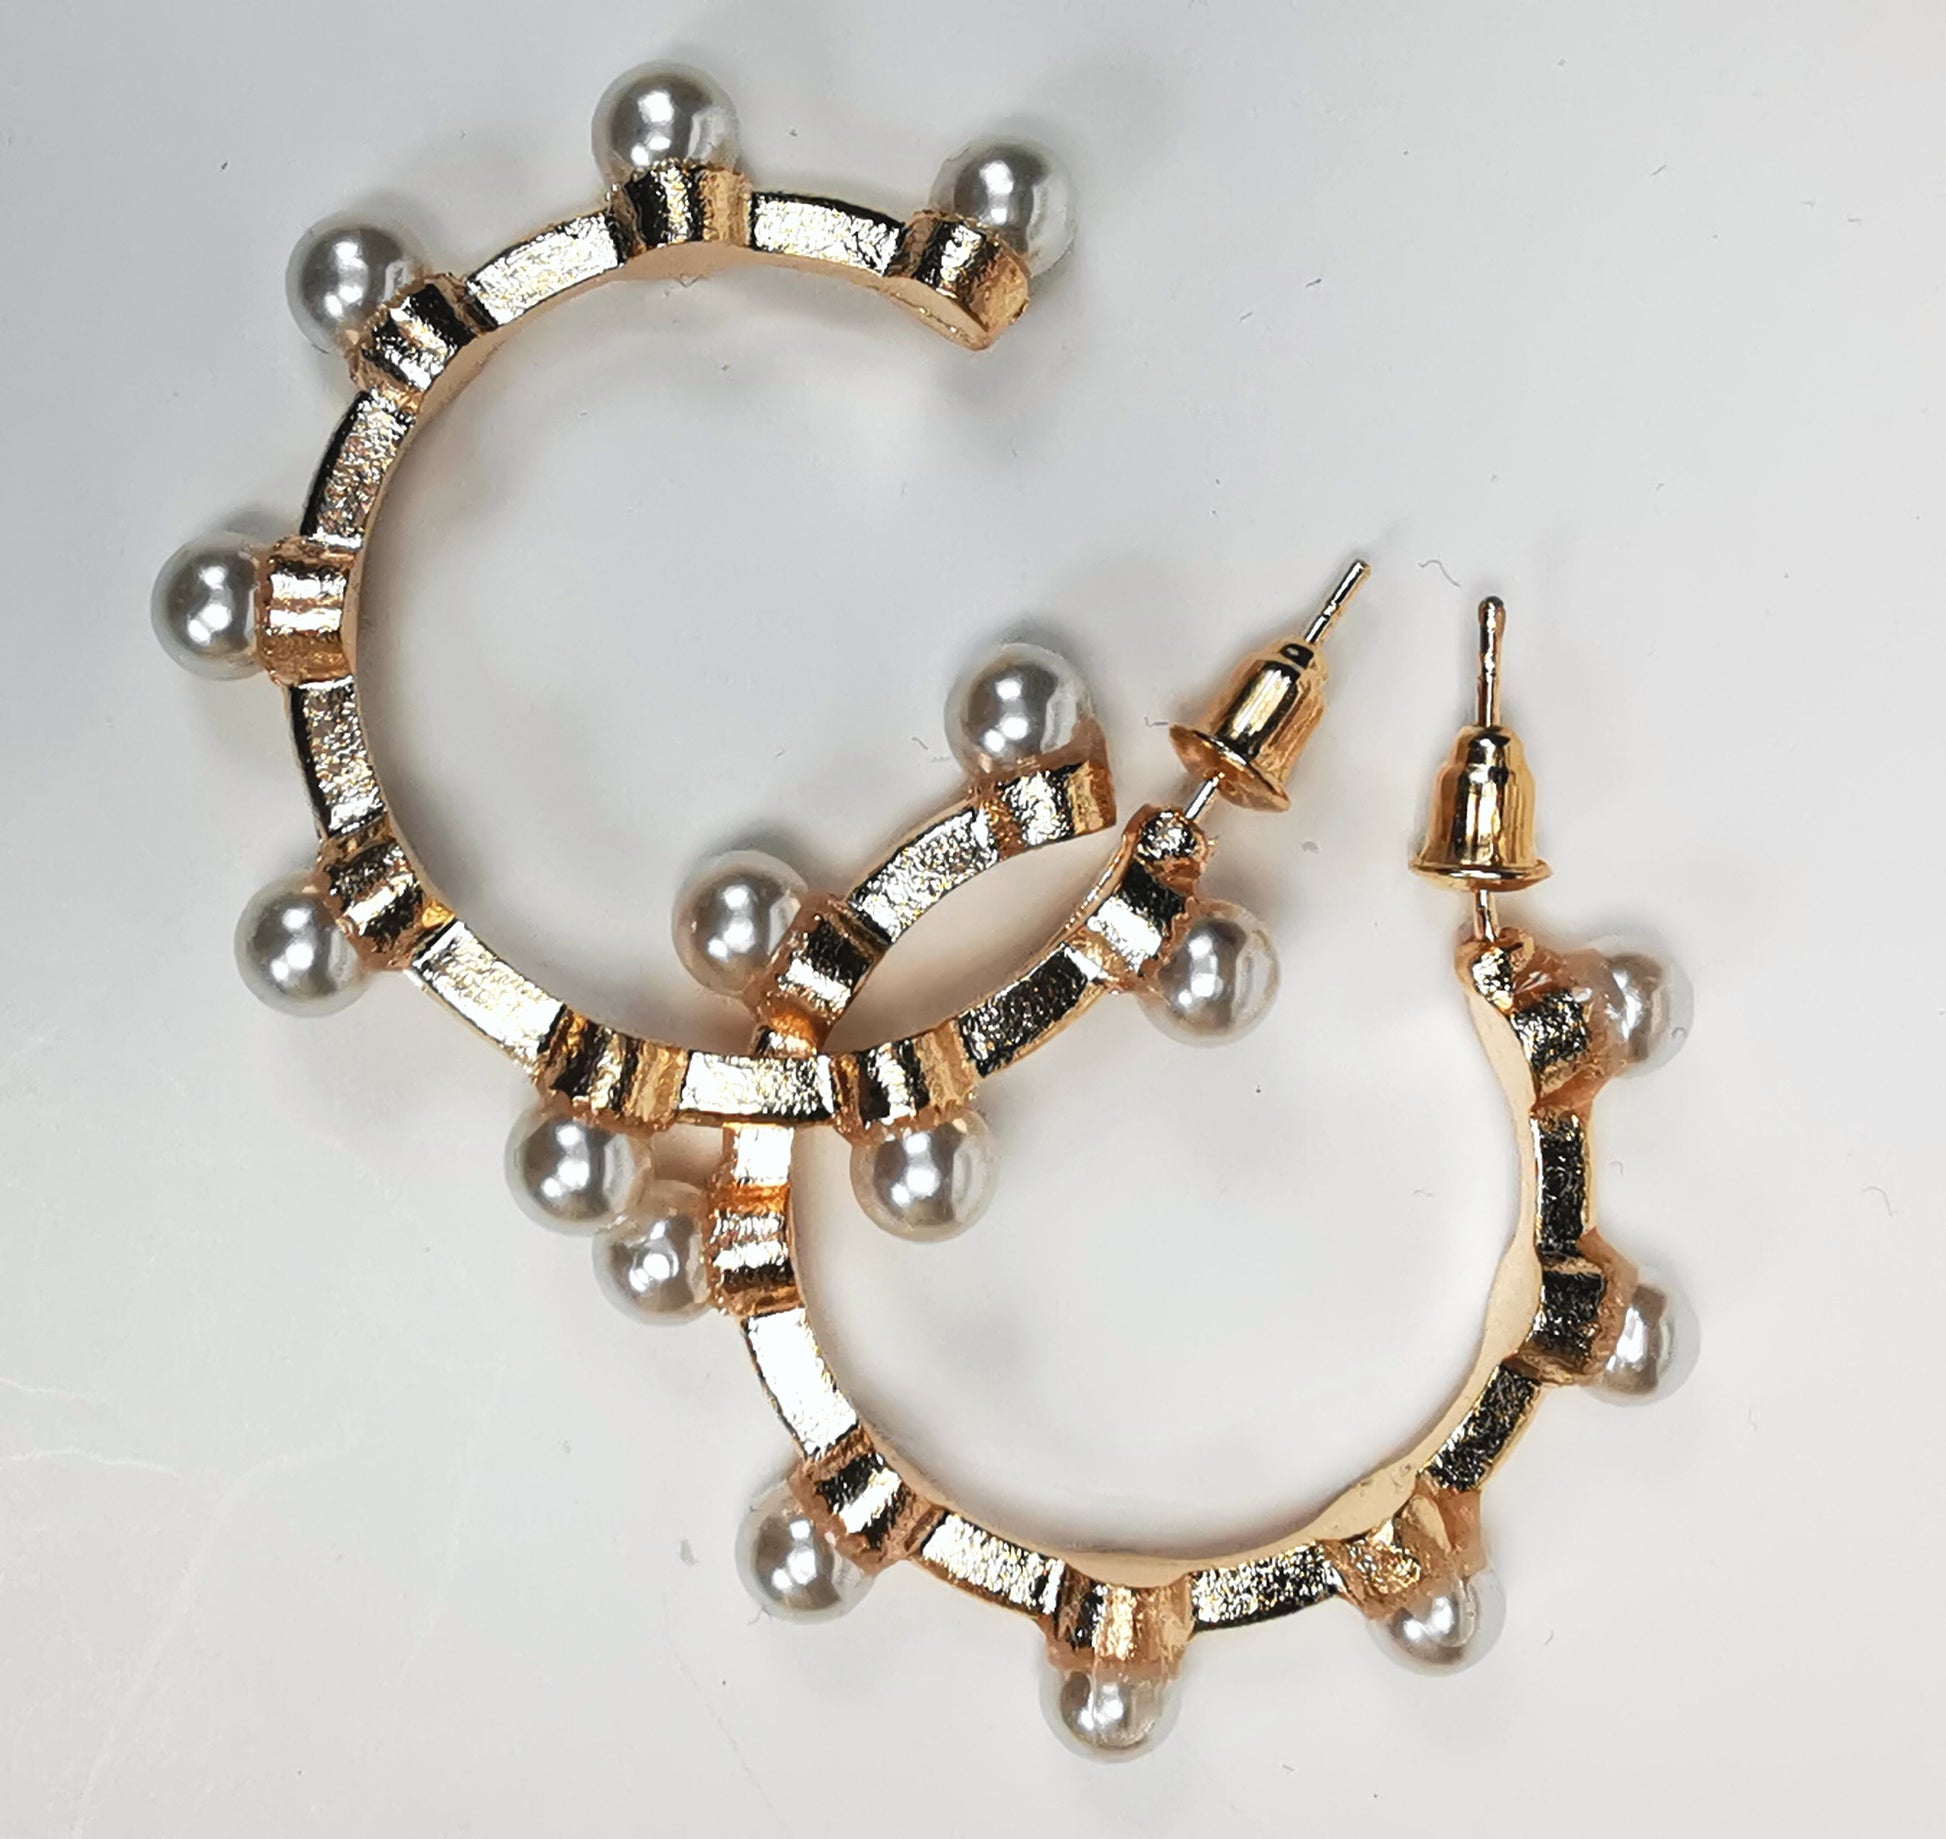 Boucles d'oreilles créoles fantaisie, en alliage doré, 35mm de diamètre, sur clous, avec 8 perles fantaisie sur la périphérie. Présentées l'une à coté de l'autre, posées sur fond blanc. Vue de dessus en gros plan.